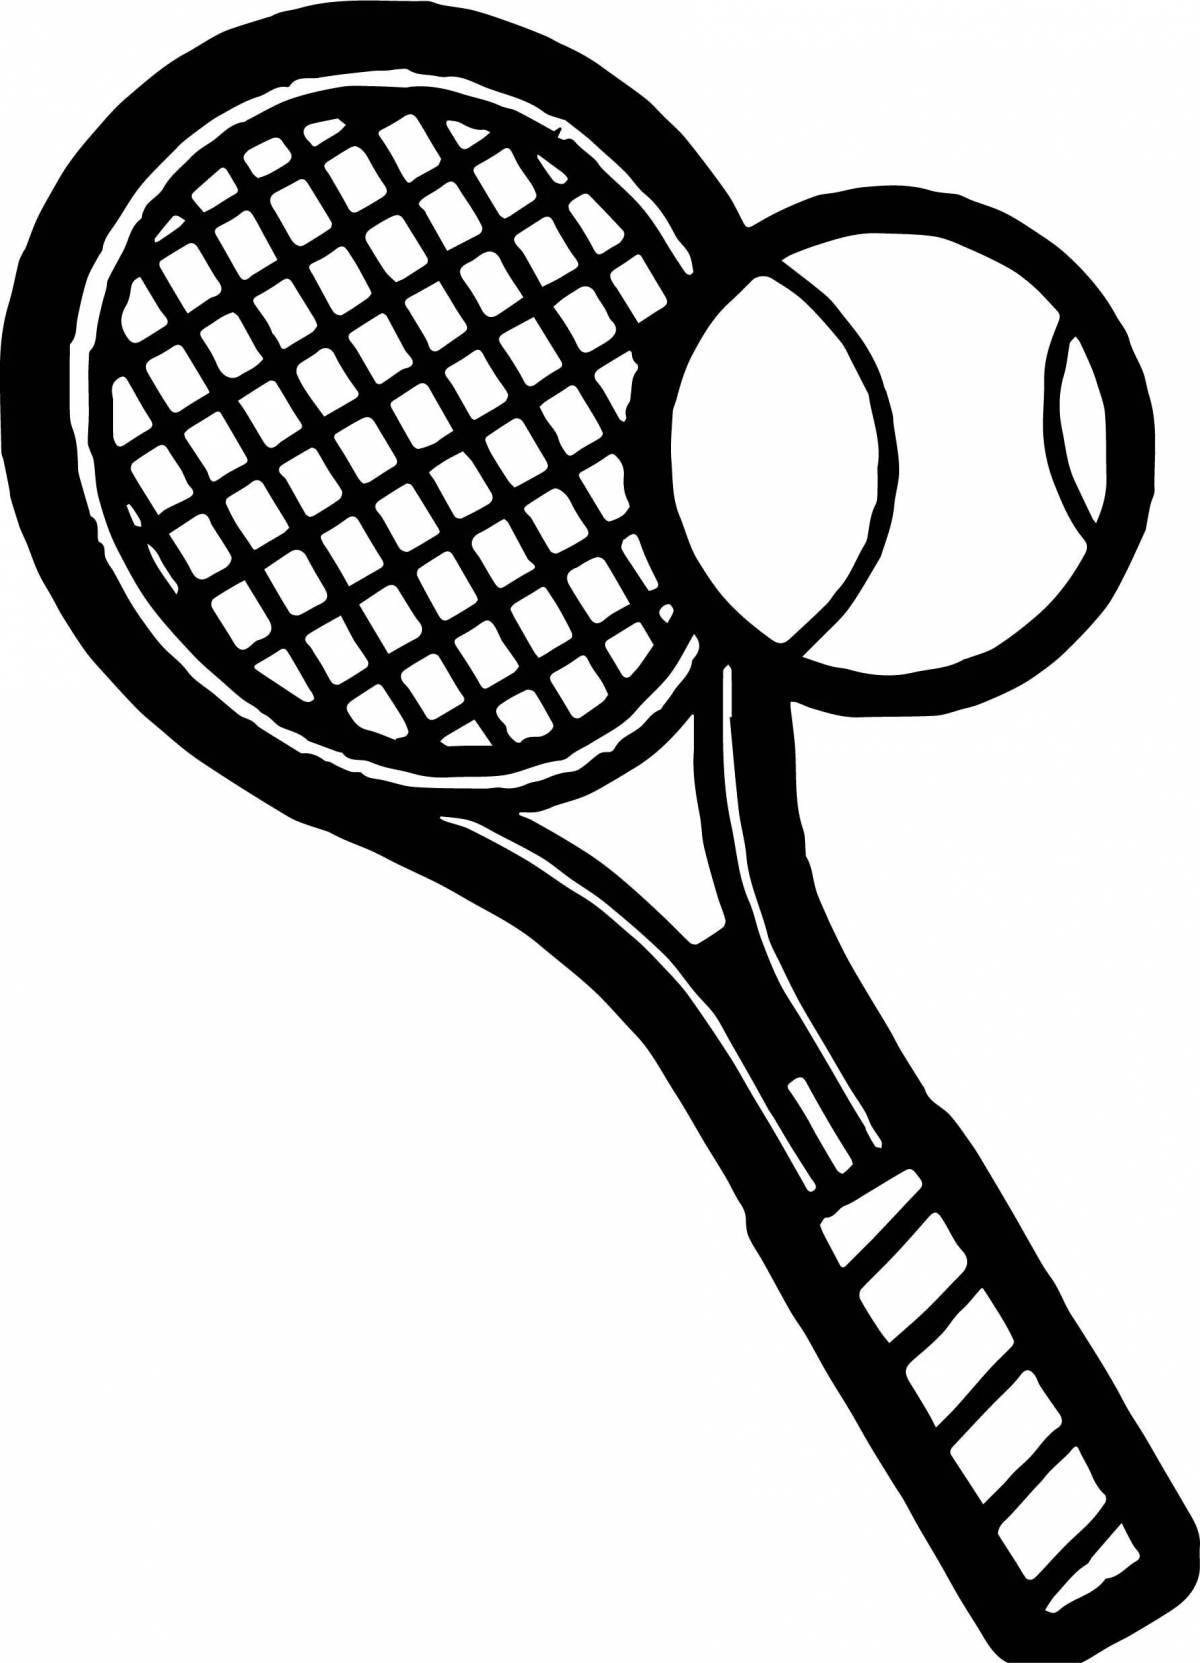 Увлекательная раскраска теннисной ракетки